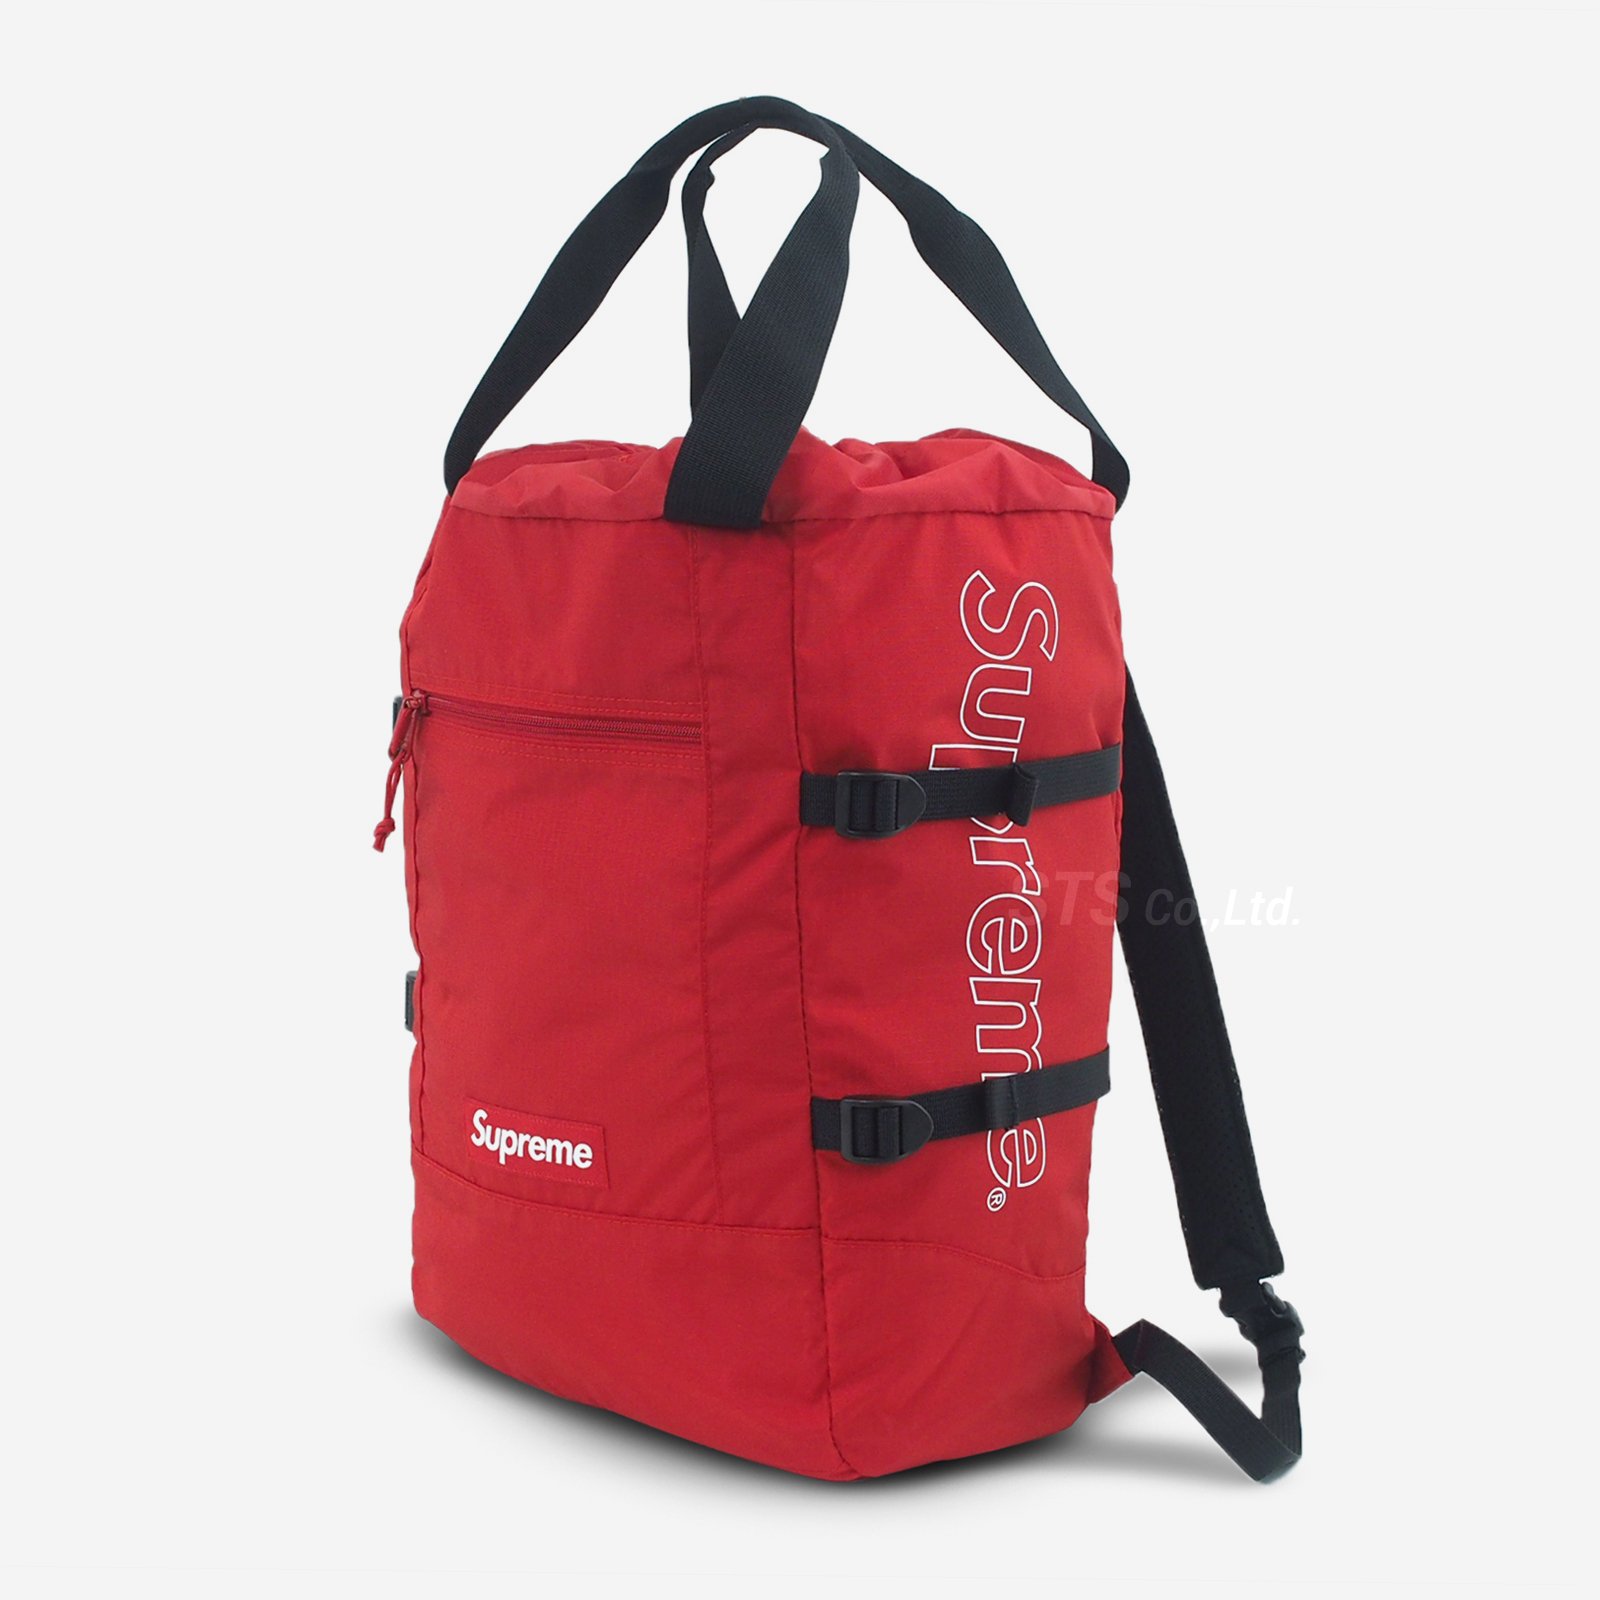 シュプリーム トートバックパック Supreme Tote Backpack